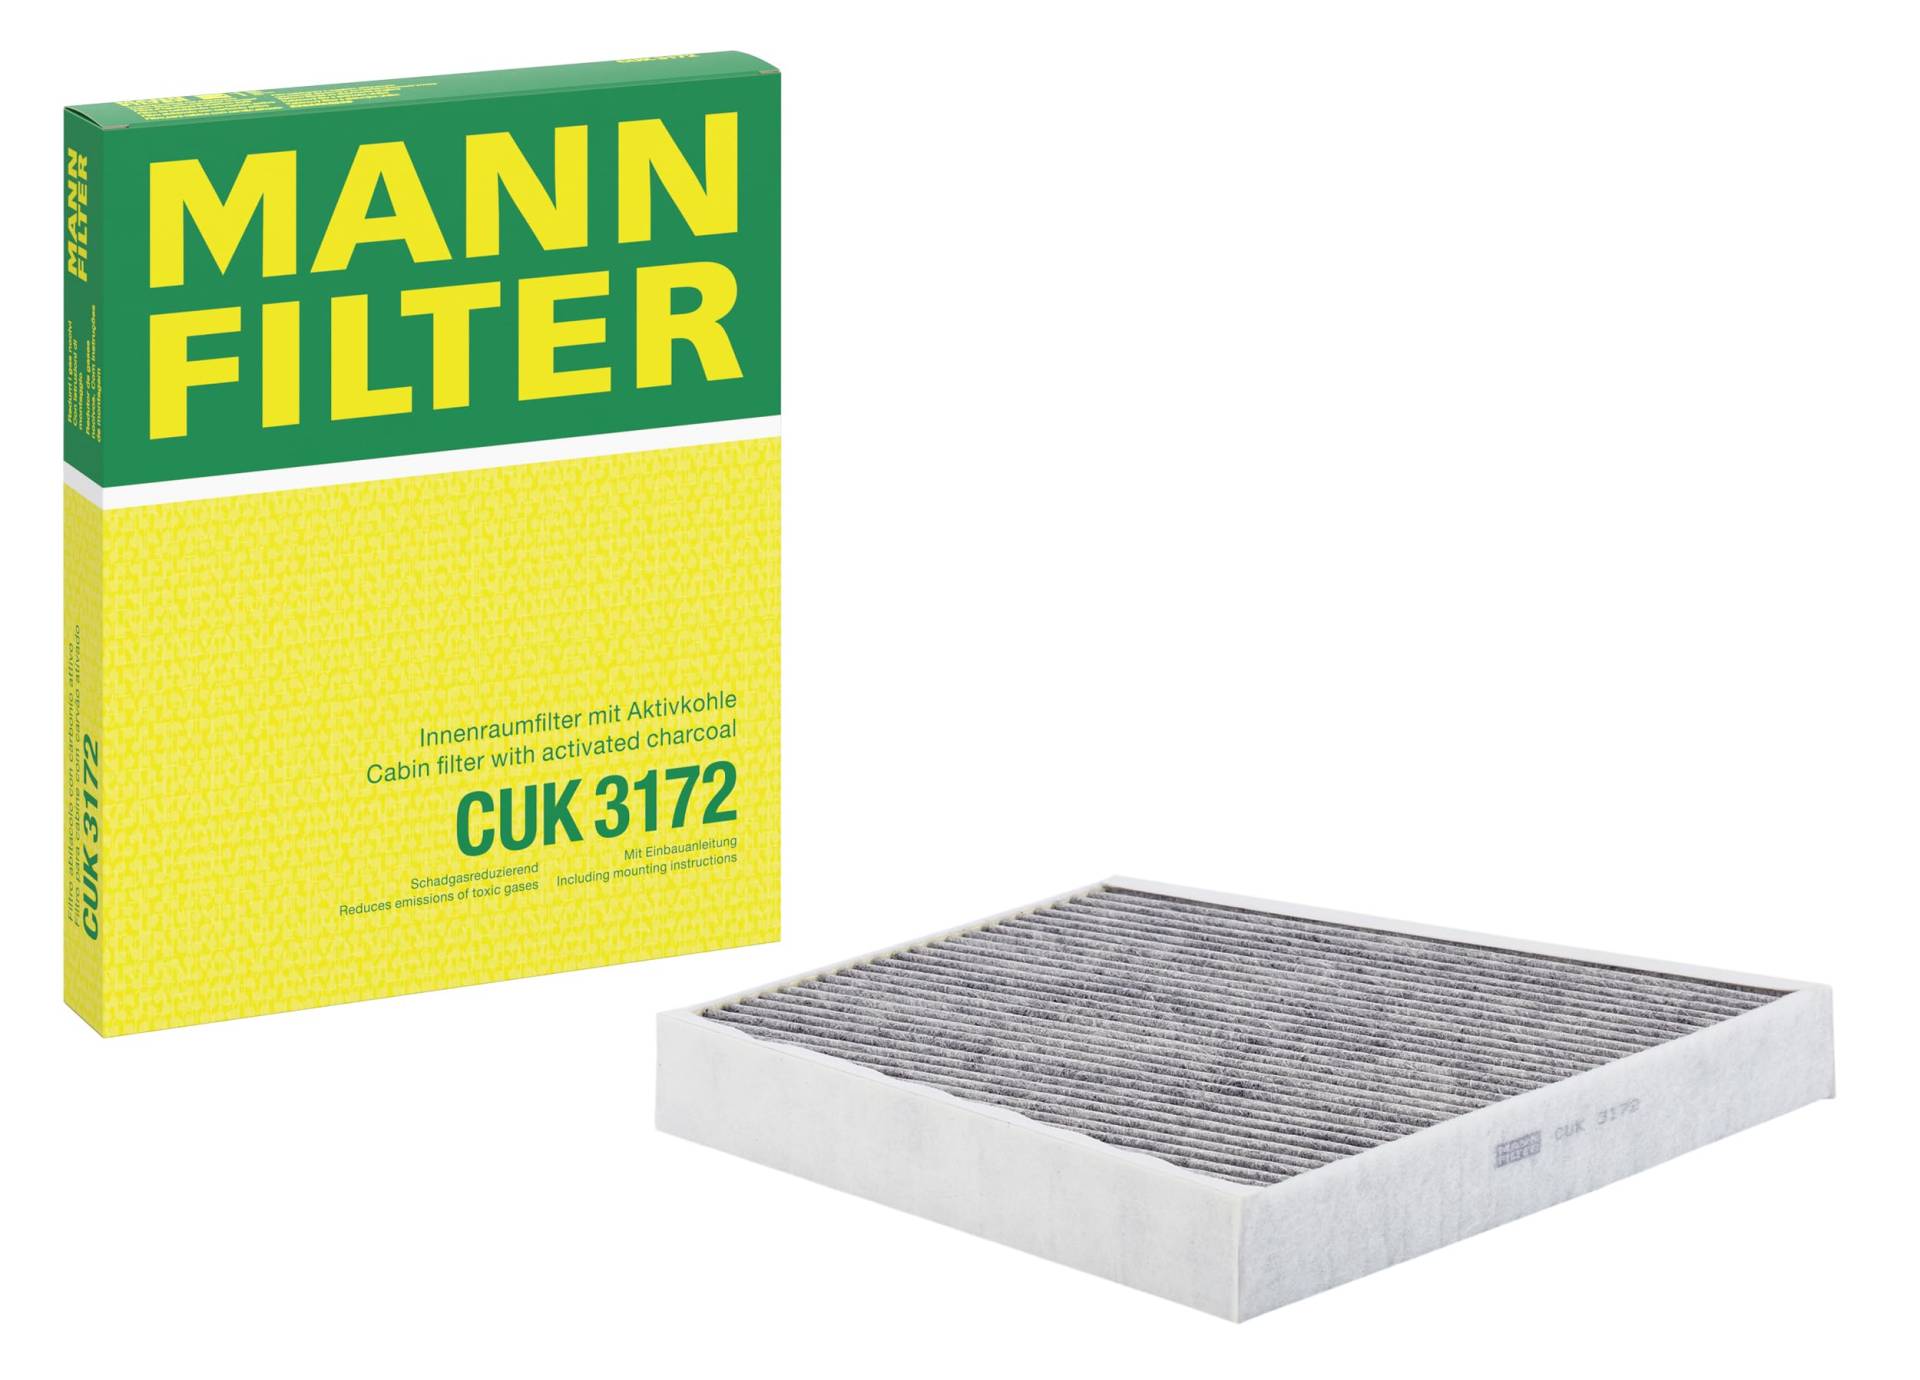 MANN-FILTER CUK 3172 Innenraumfilter – Pollenfilter mit Aktivkohle – Für PKW von MANN-FILTER